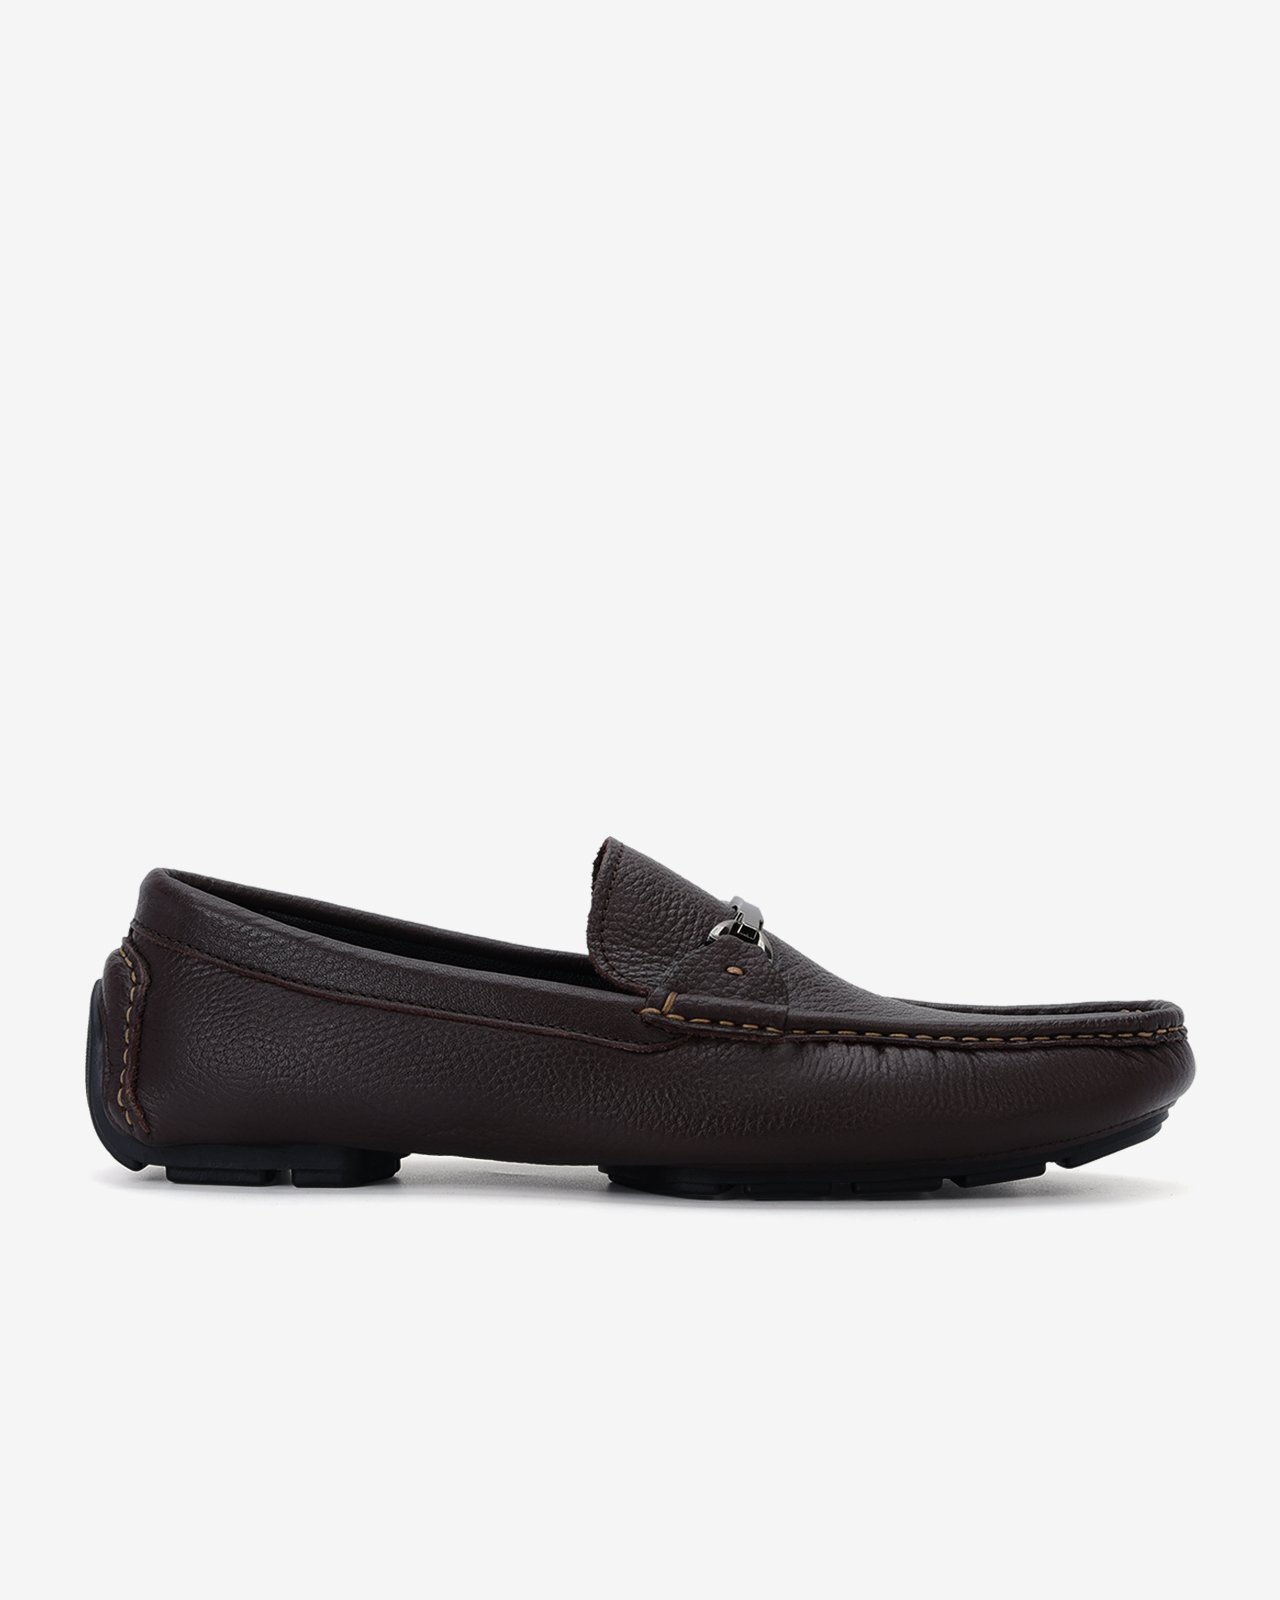 Giày lười nam Đông Hải thiết kế Horsebit Loafer đính kim loại ngang mũi giày tăng  vẻ thanh lịch - G2283